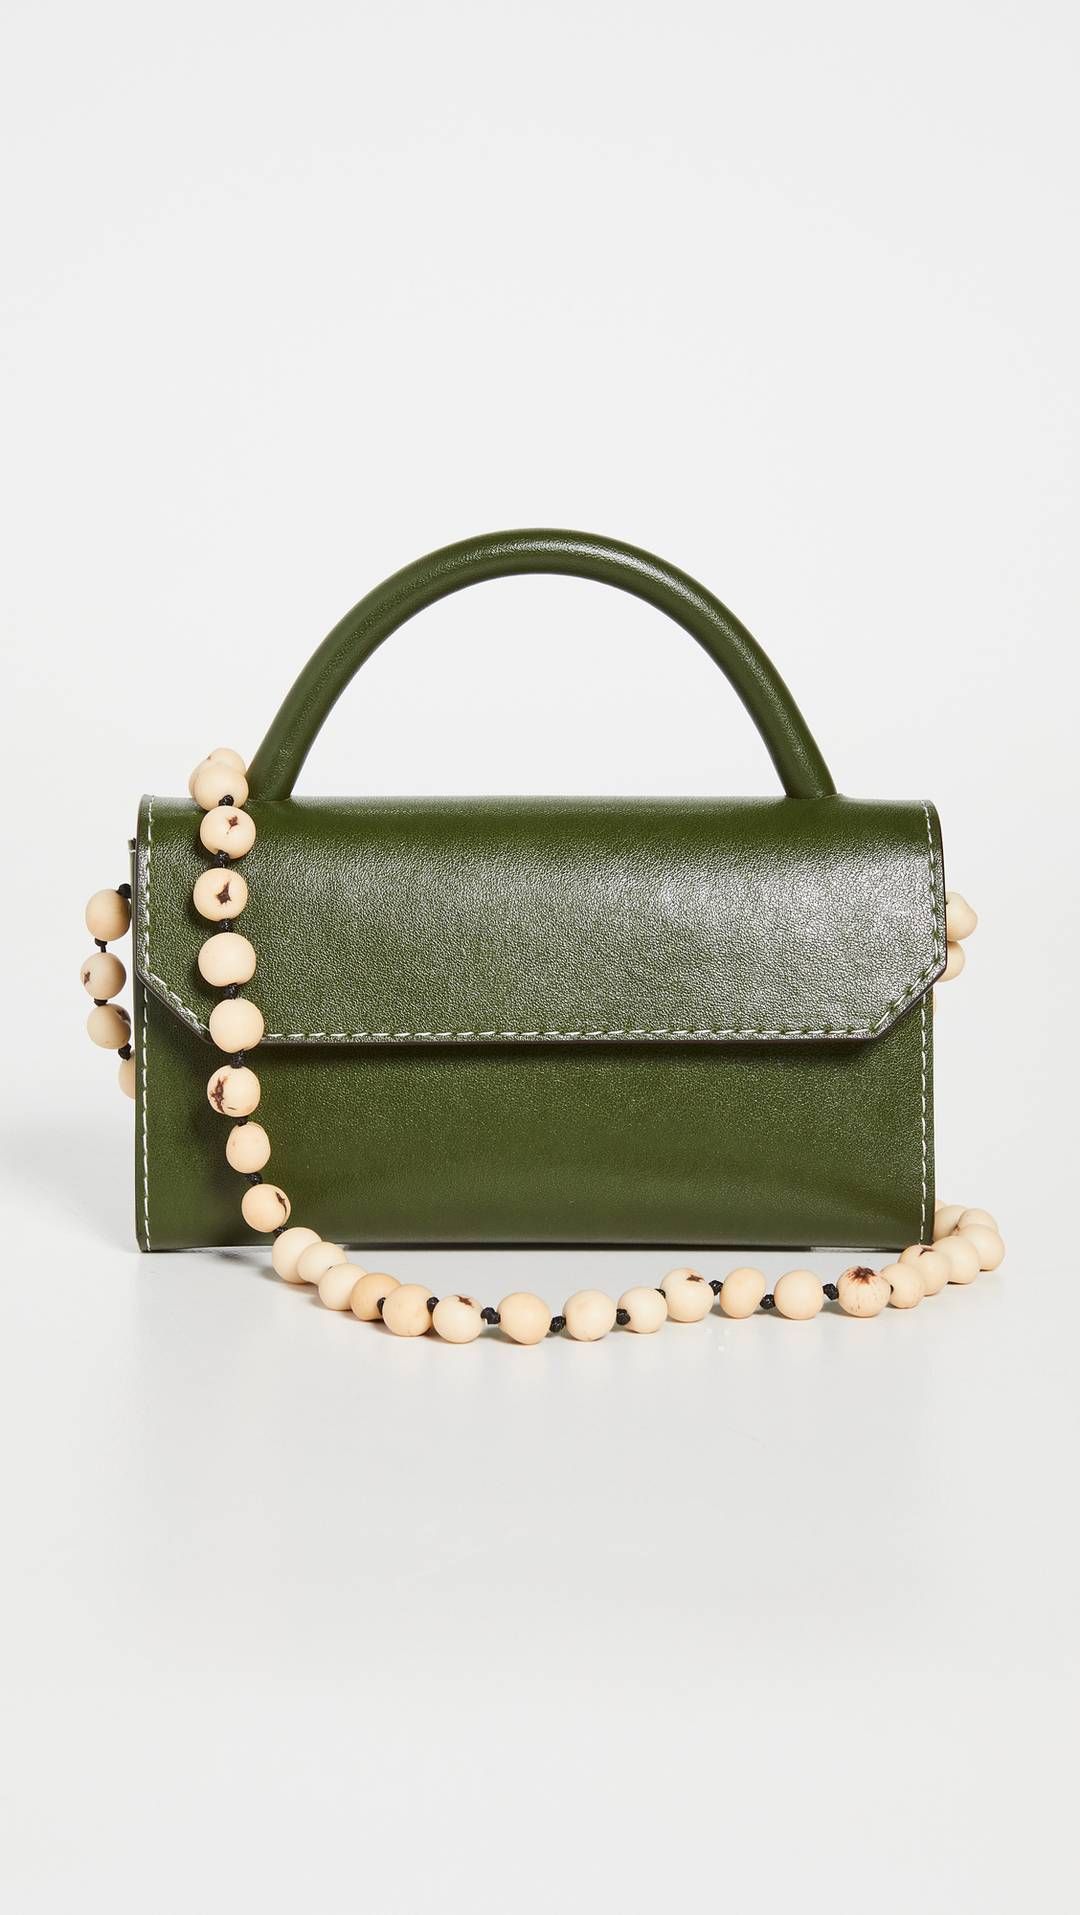 5 colors for handbag 4. Green